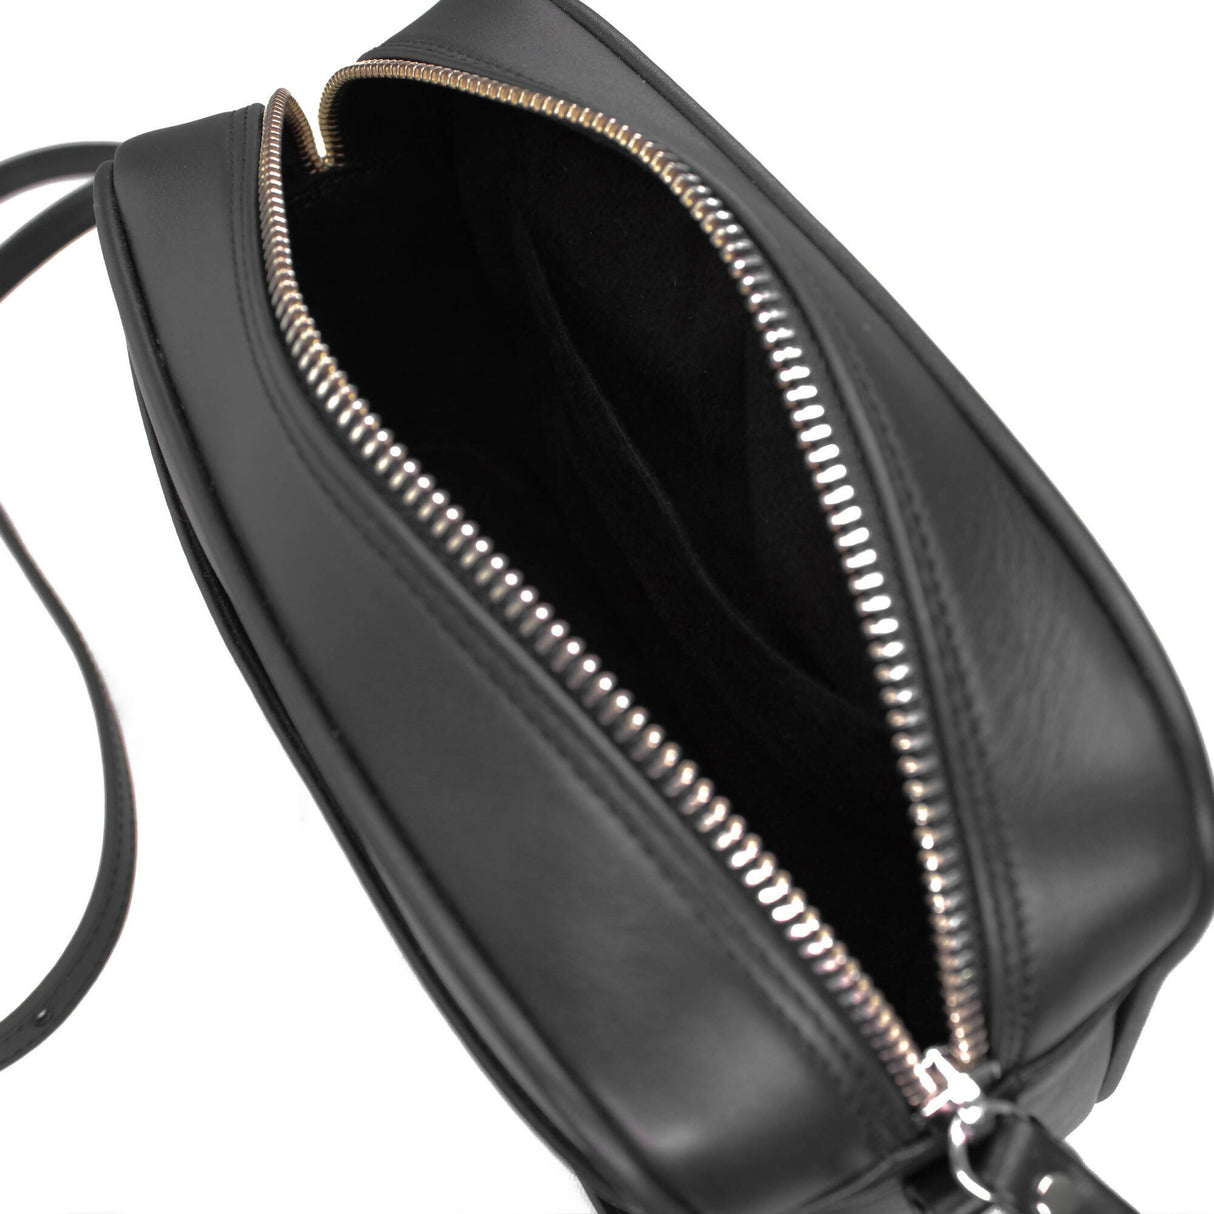 Nino - Black Leather Shoulder Bag